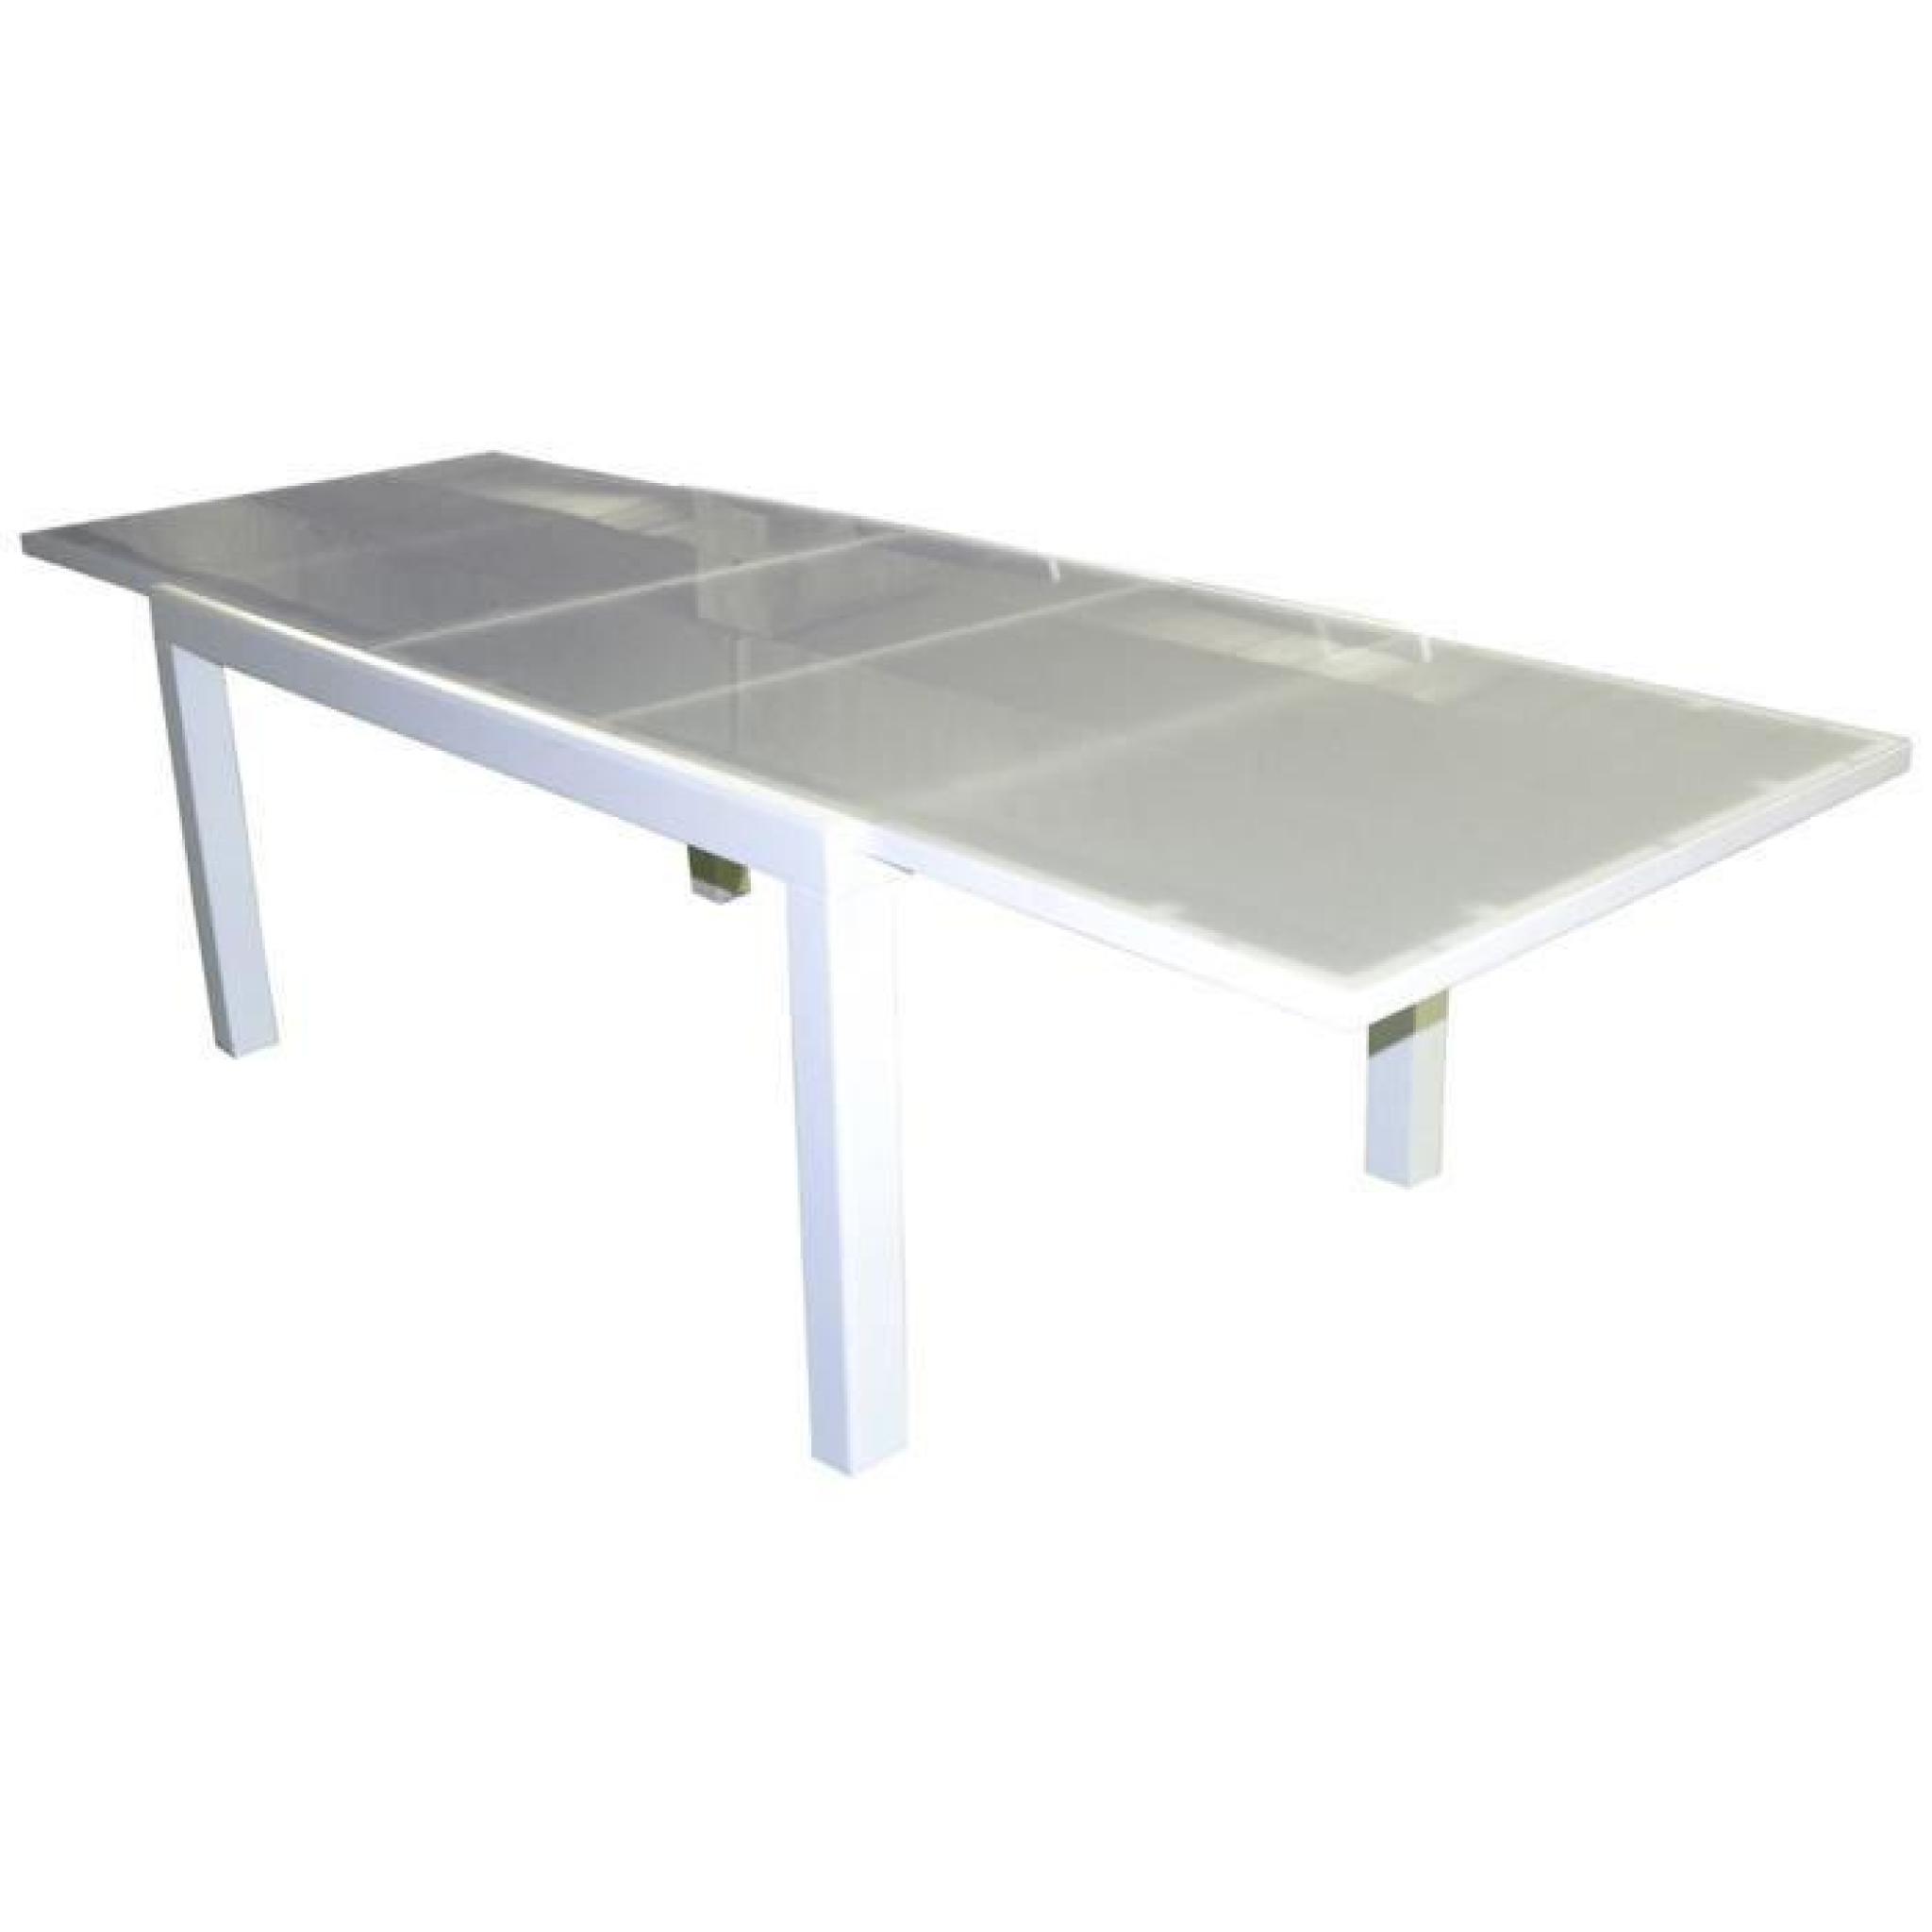 Table extensible en aluminium blanc avec plateau en verre opaque blanc - Dim : 74 x 160-280 x 100 cm